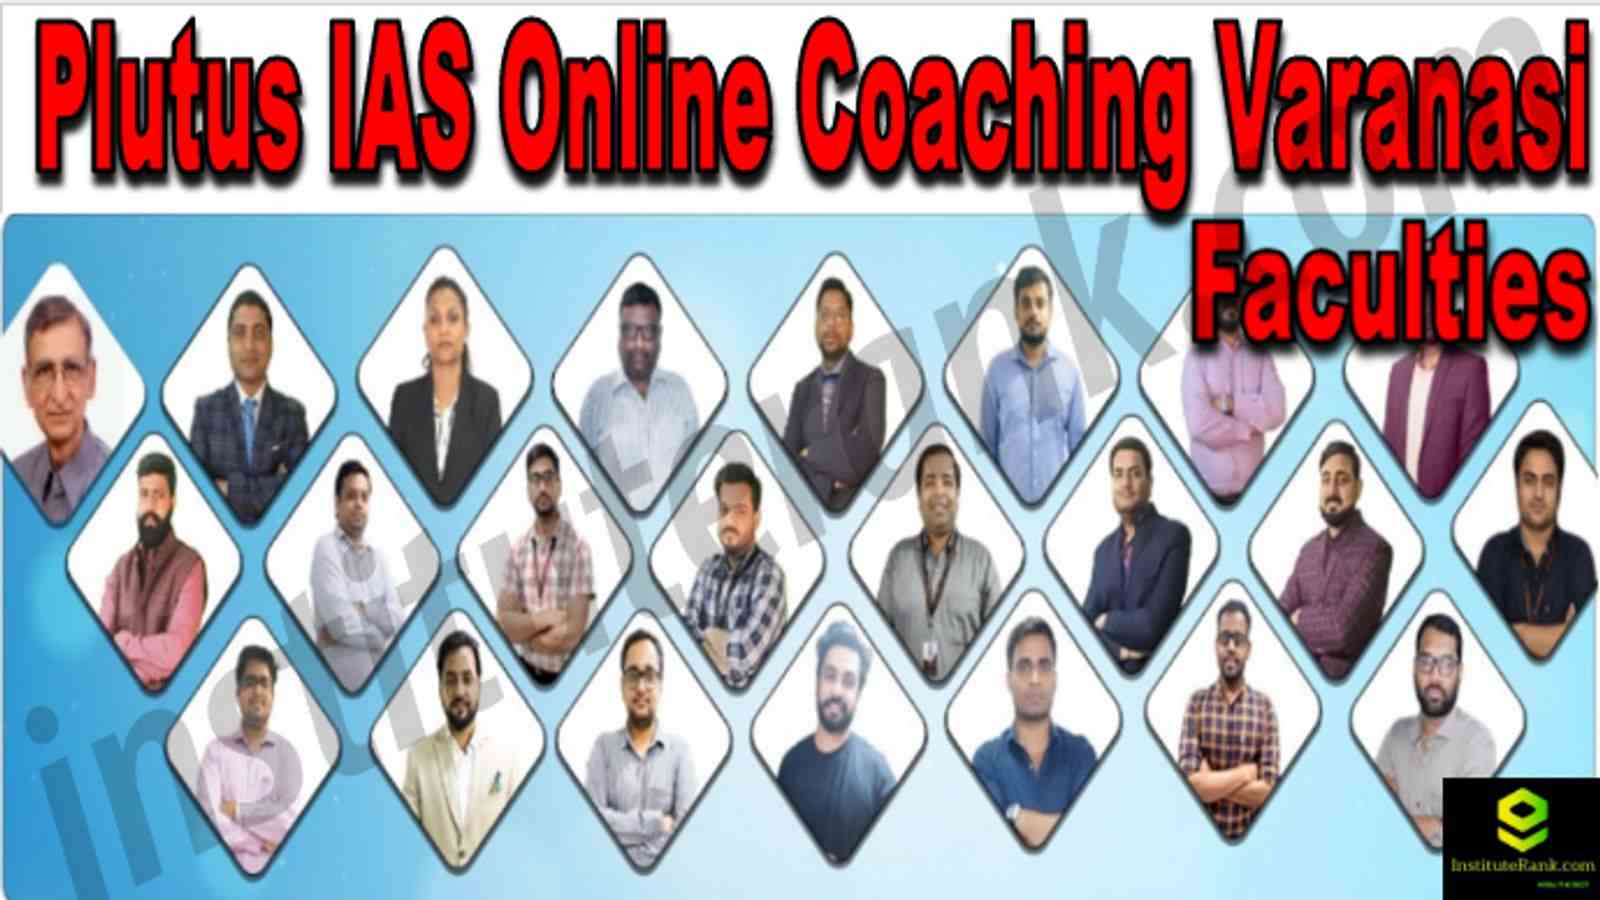 Plutus IAS Online Coaching Varanasi Reviews Faculties